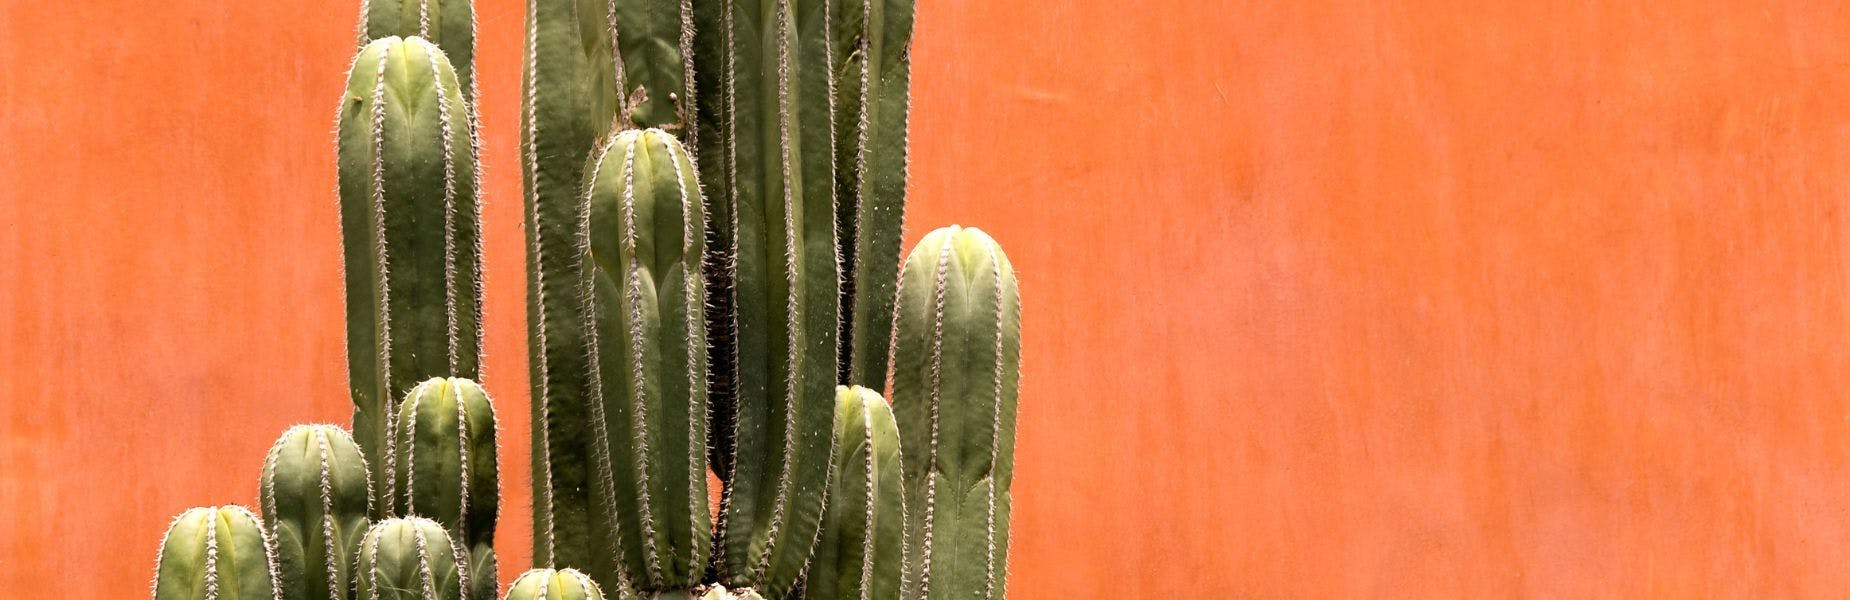 cactussen voor een oranje muur